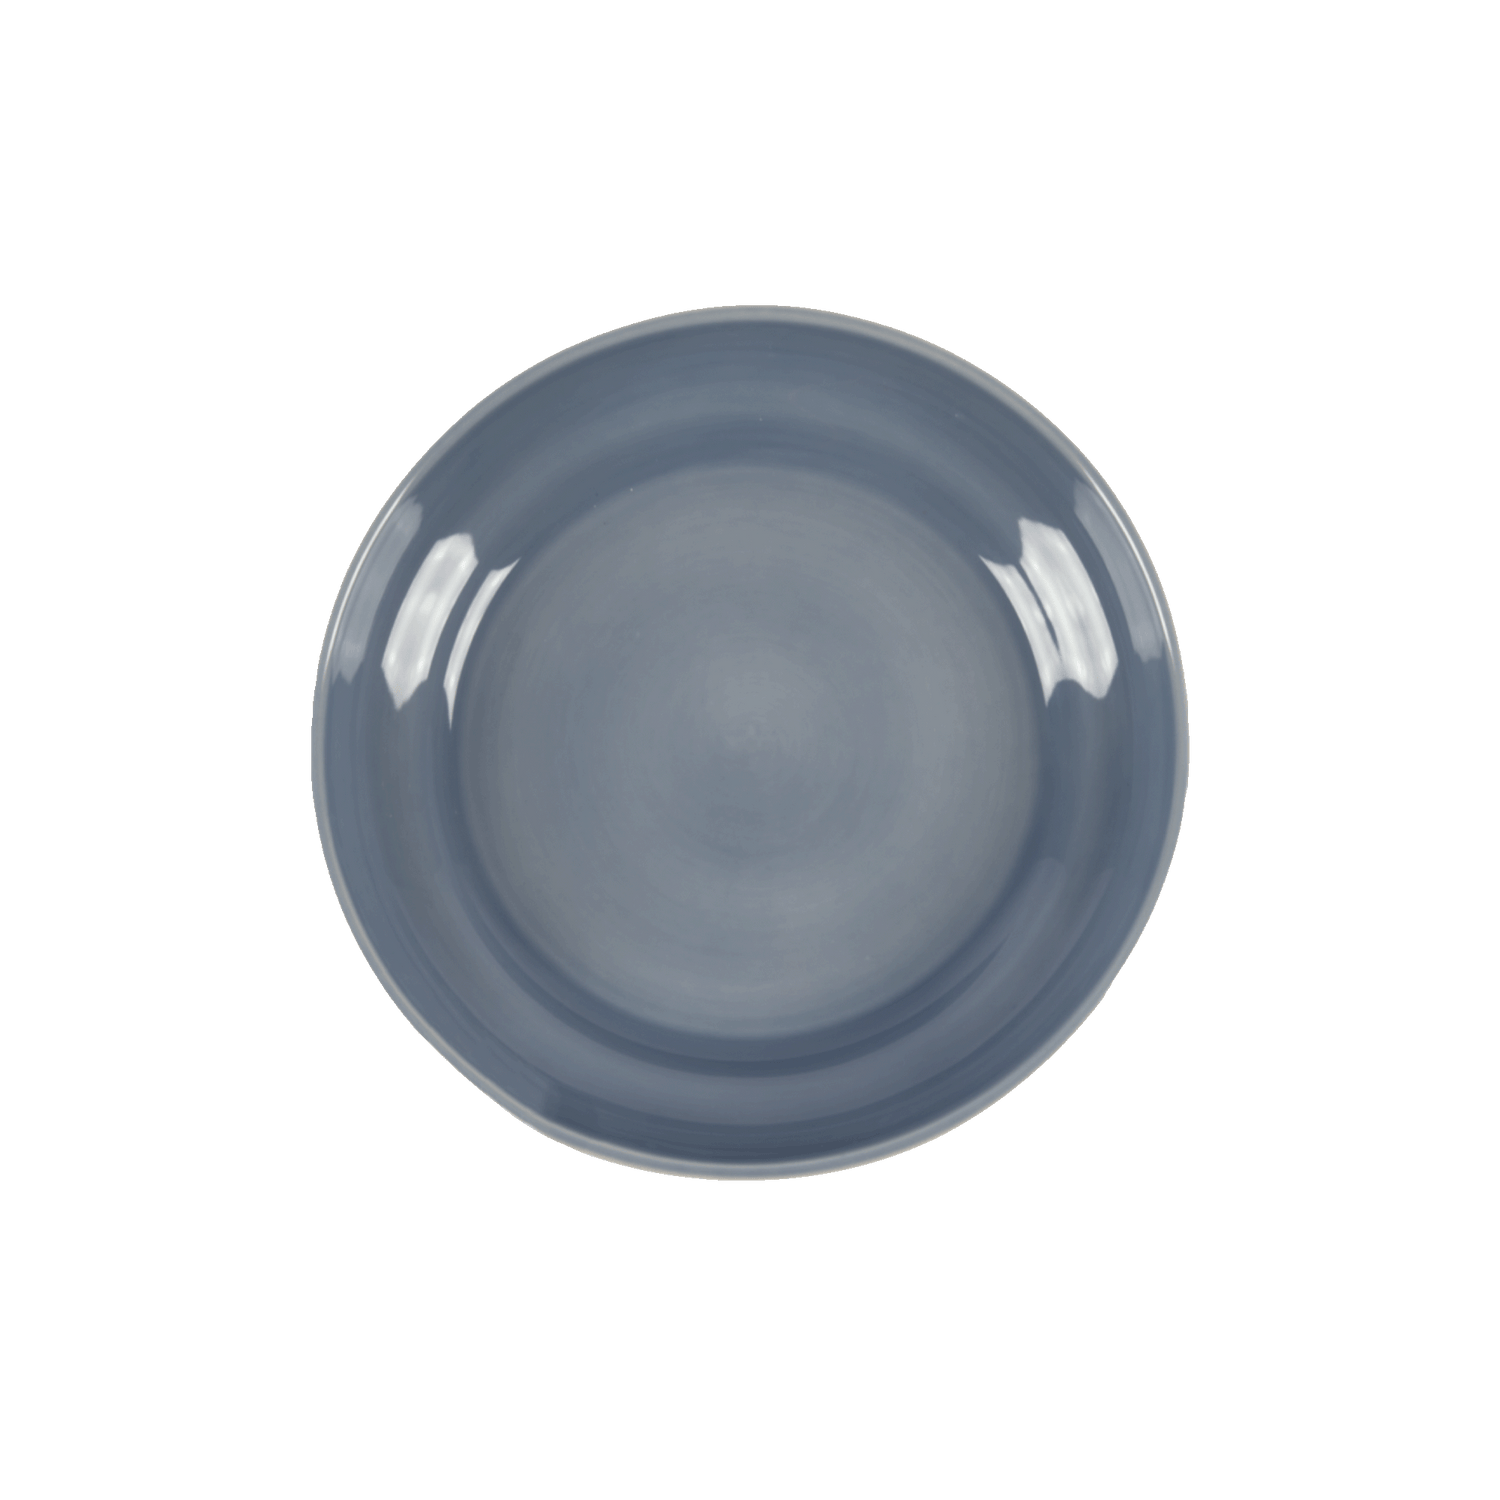 Classic serving bowl - Light blue 32 cm